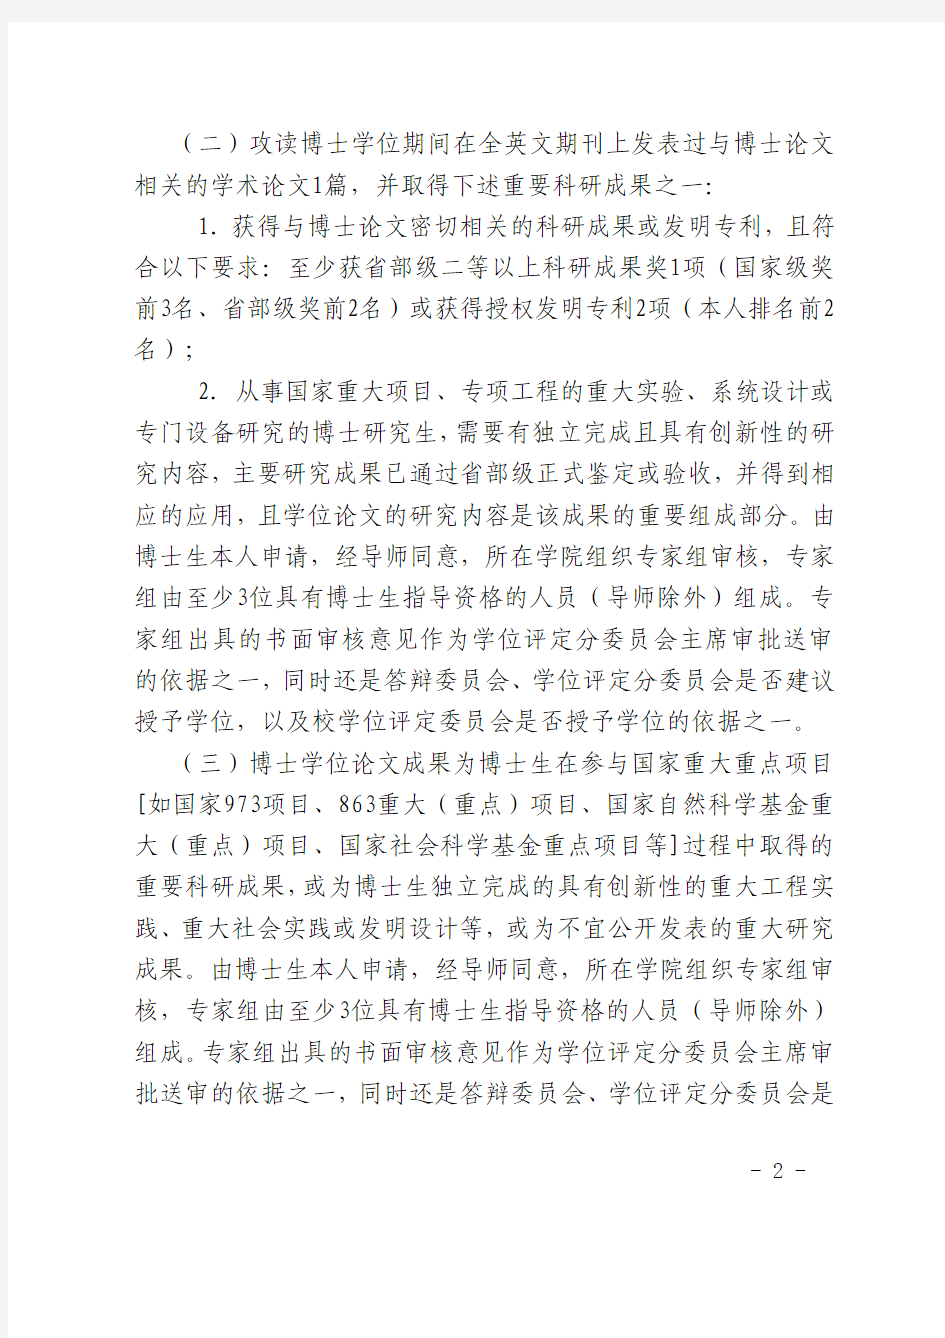 西安交通大学关于研究生学位申请的若干规定(西交研〔2013〕23号)